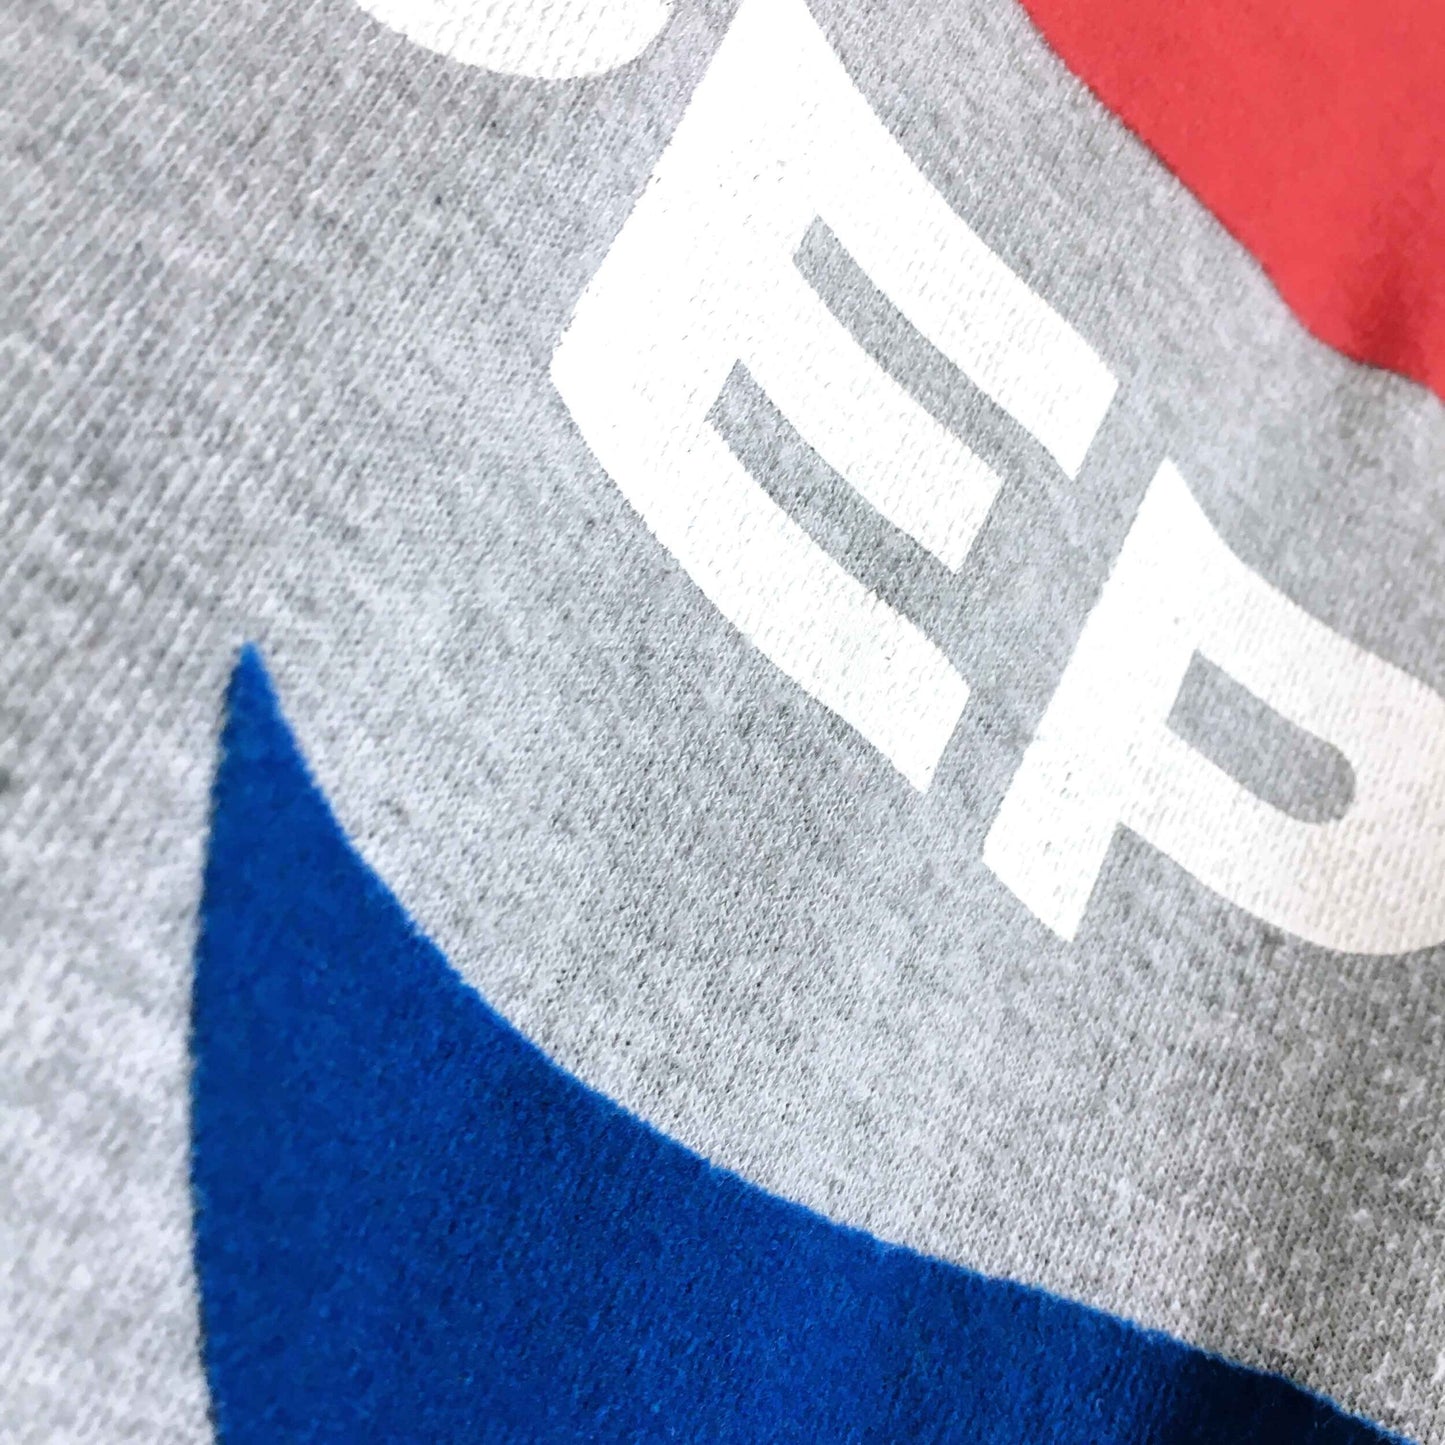 TOPSHOP Tee and Cake Pepsi Sweatshirt - size 6